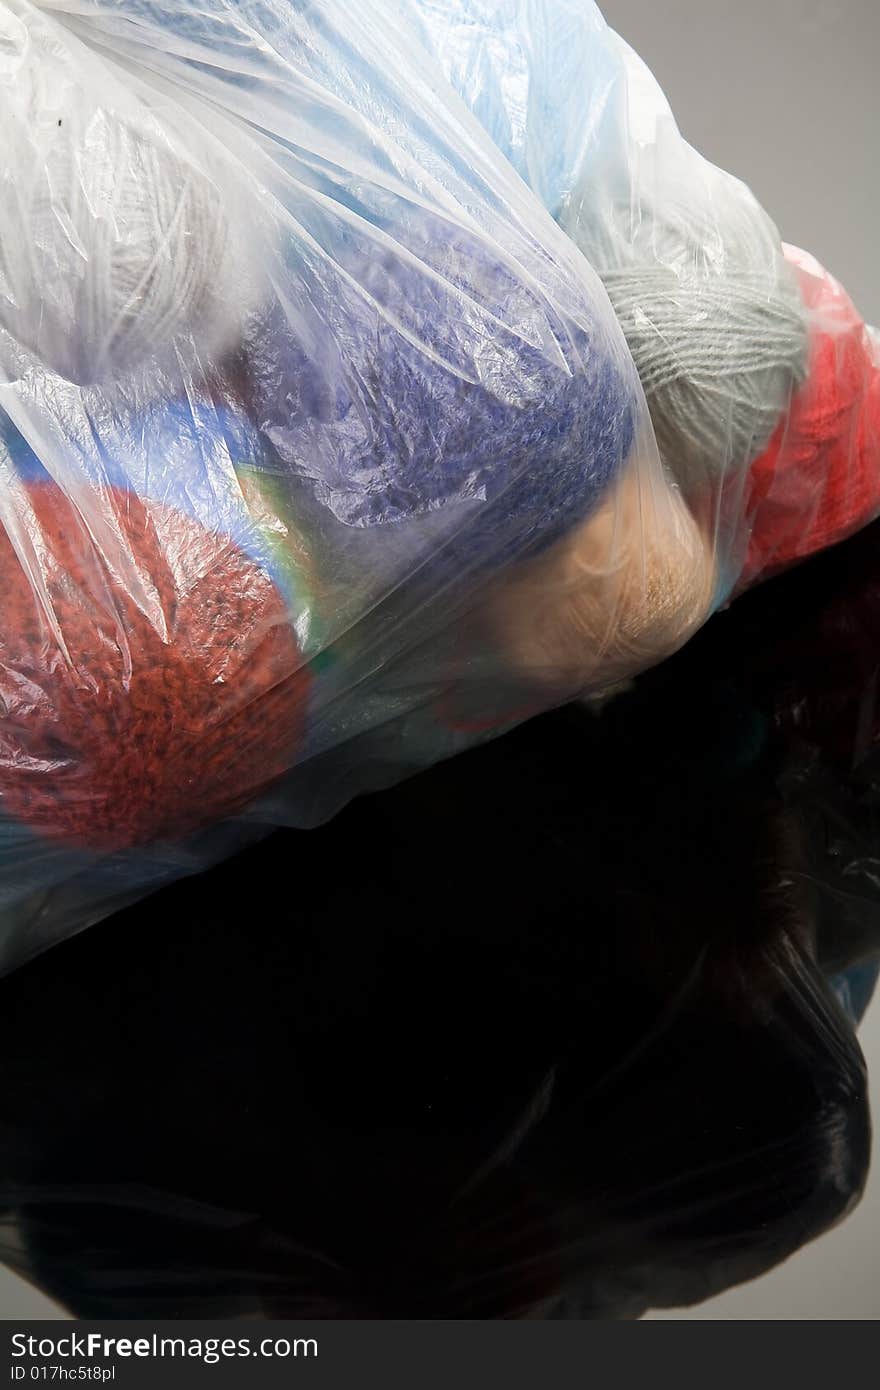 Threads in transparent plastic bag